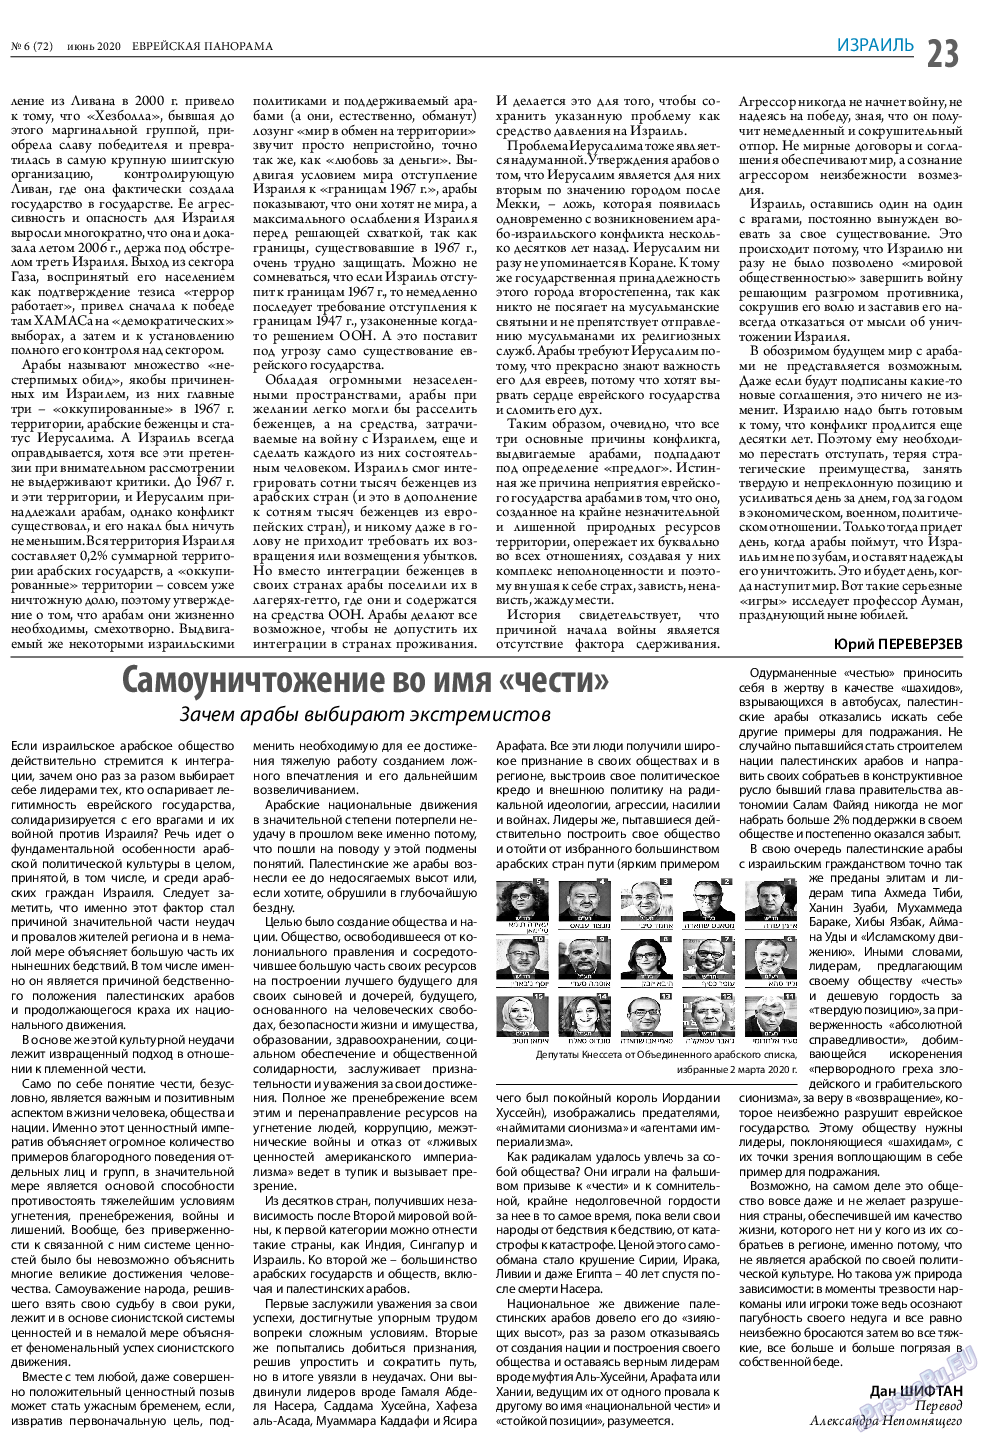 Еврейская панорама (газета). 2020 год, номер 6, стр. 23